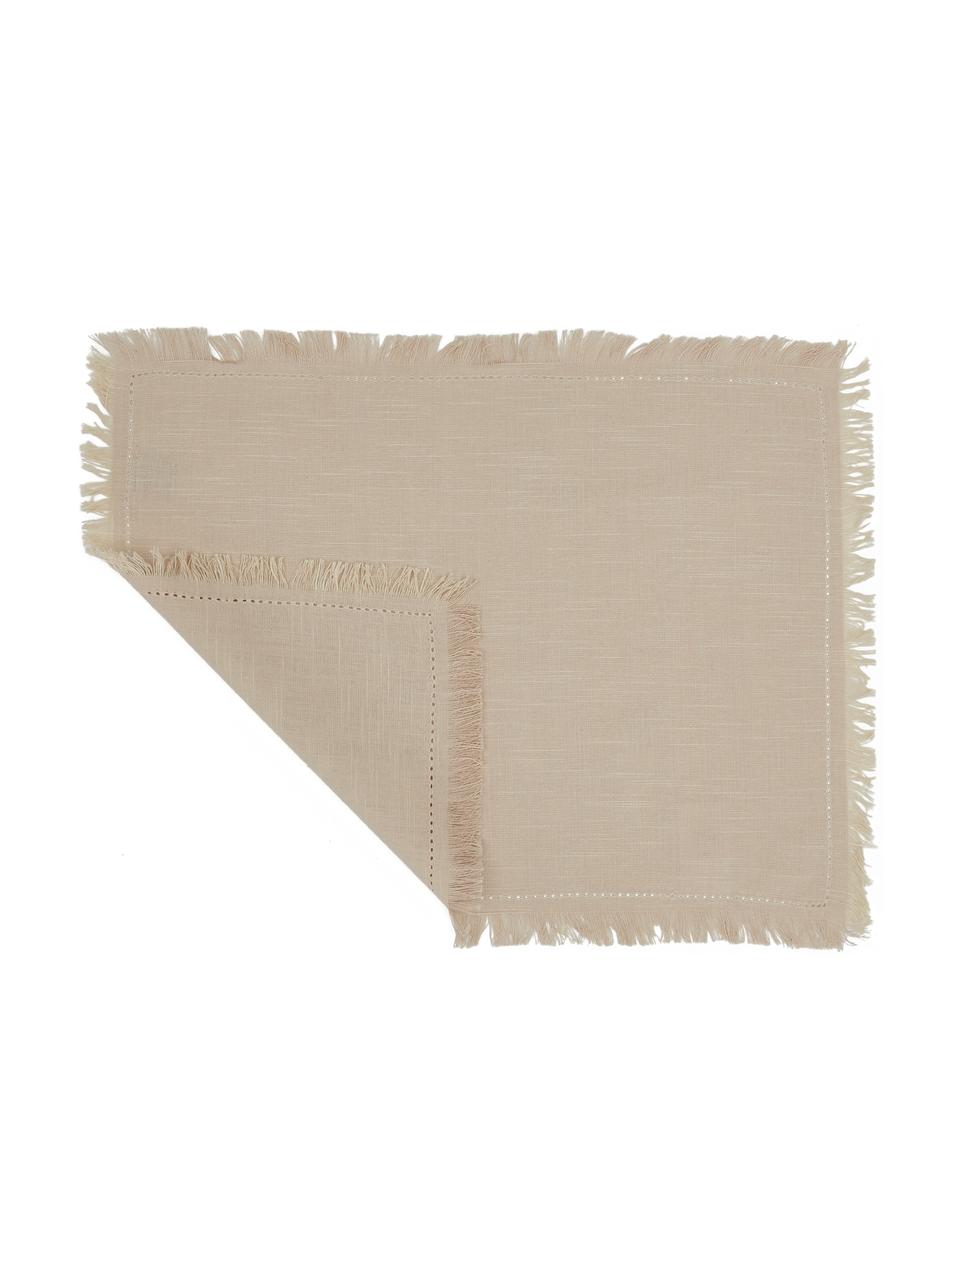 Baumwoll-Tischsets Henley mit Fransen, 2 Stück, 100% Baumwolle, Beige, 35 x 45 cm